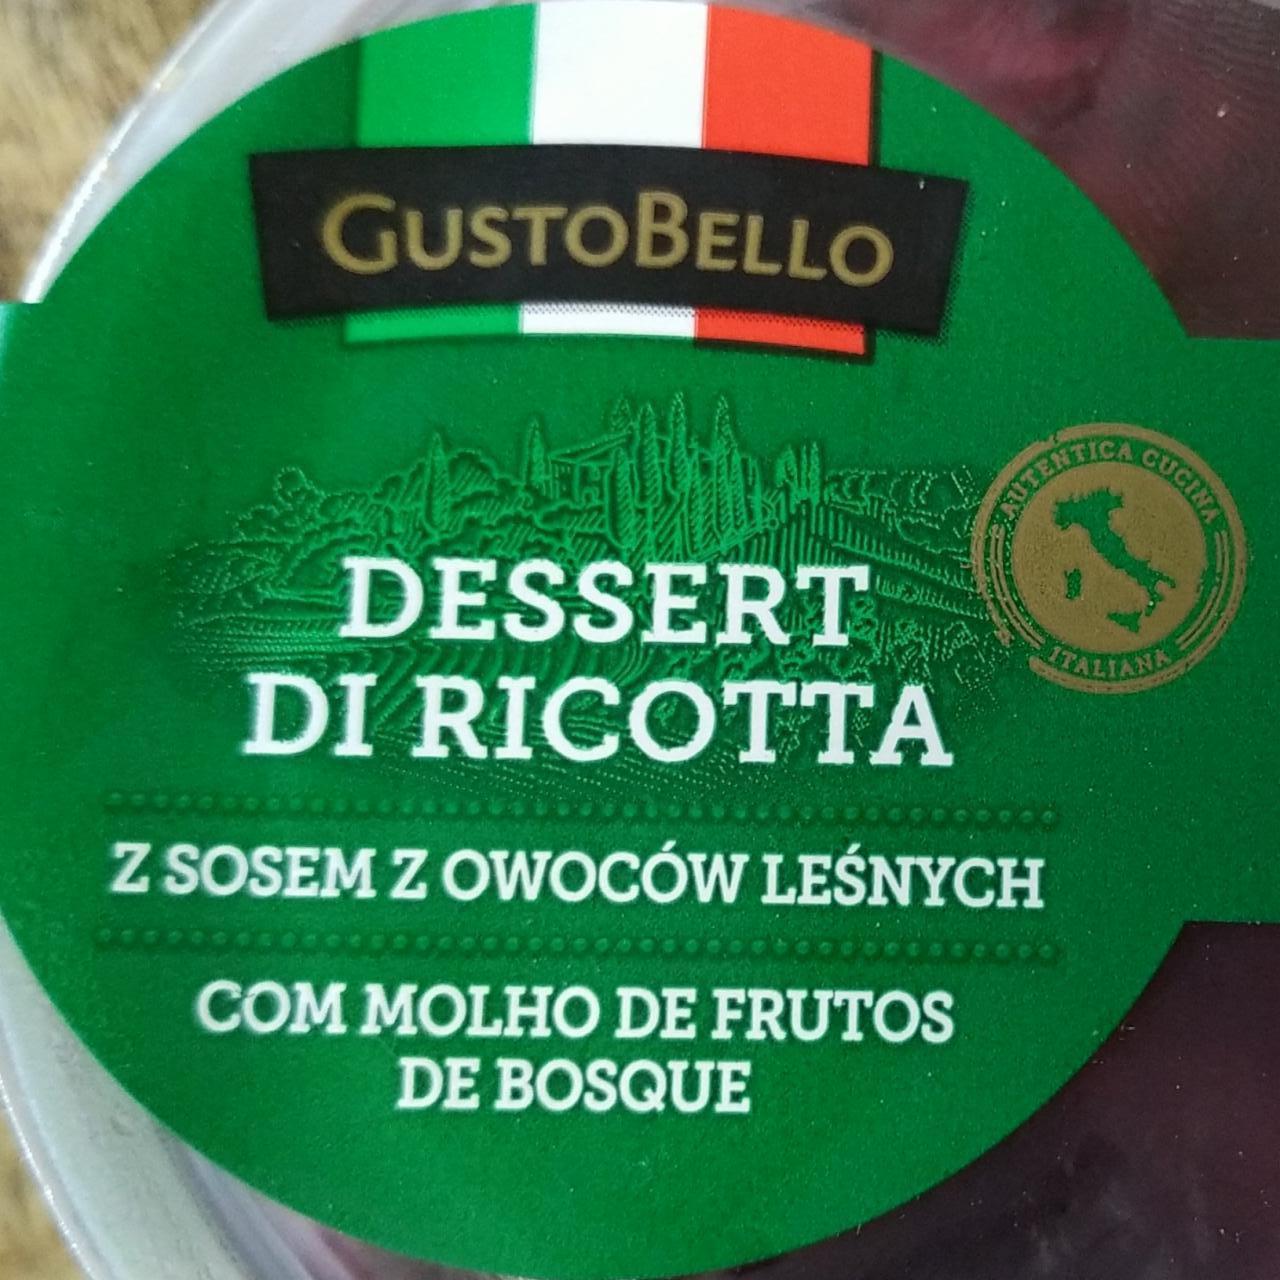 Fotografie - Dessert di Ricotta z sosem z owocow lesnych GustoBello